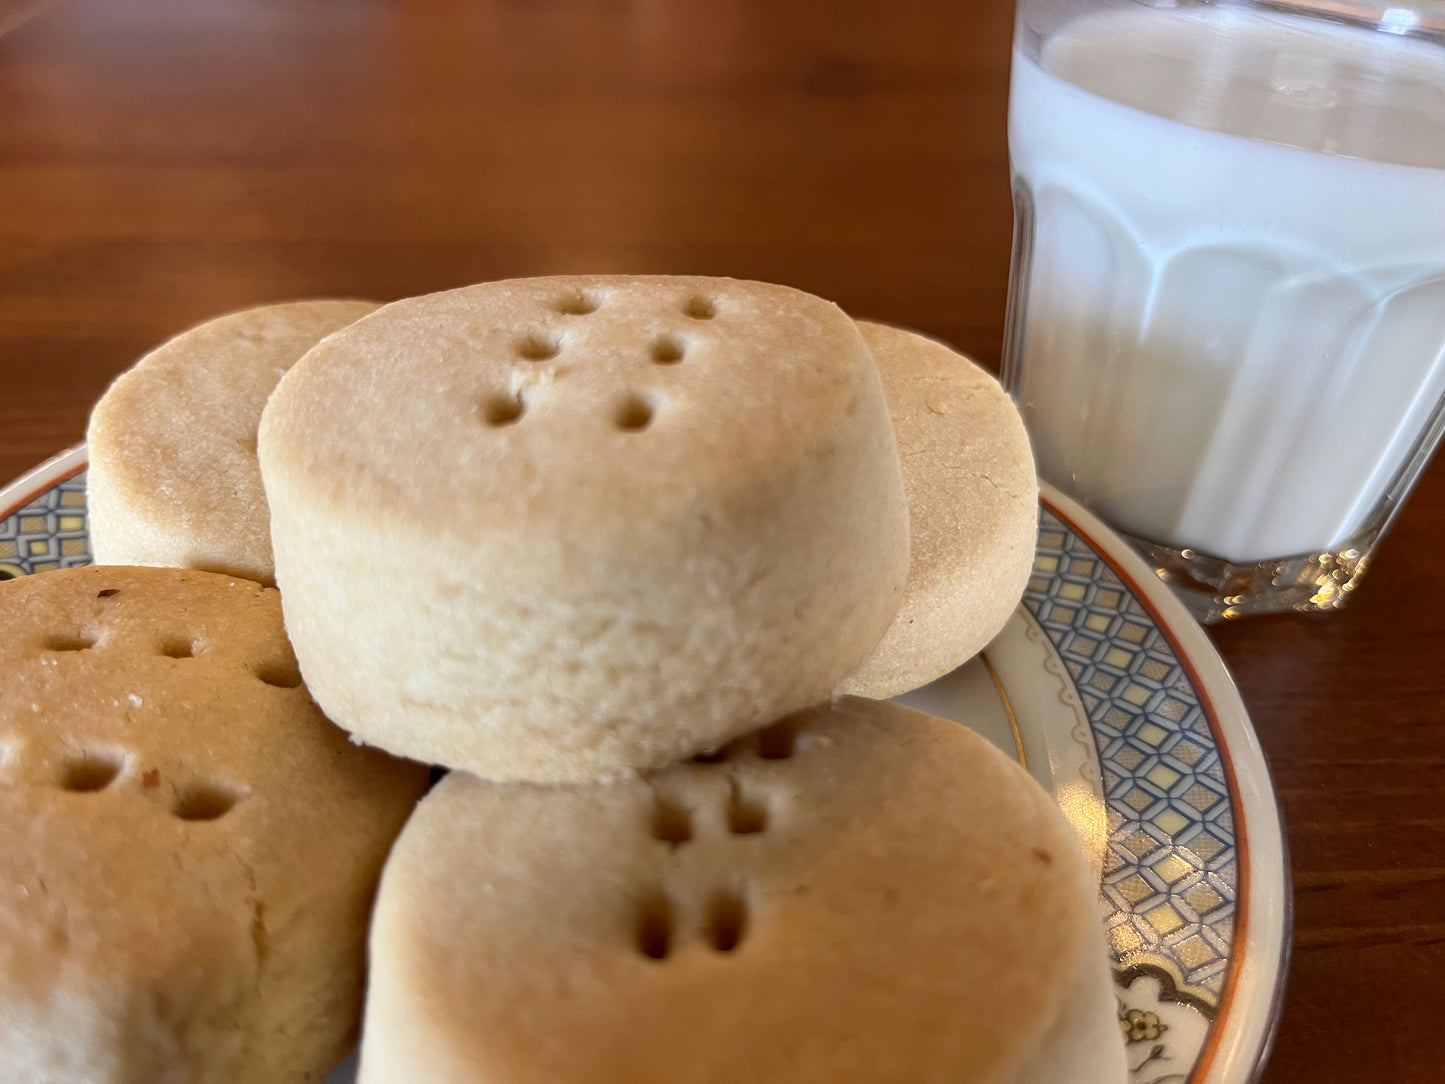 6. Peanut Butter Shortbread Cookies - 12 cookies